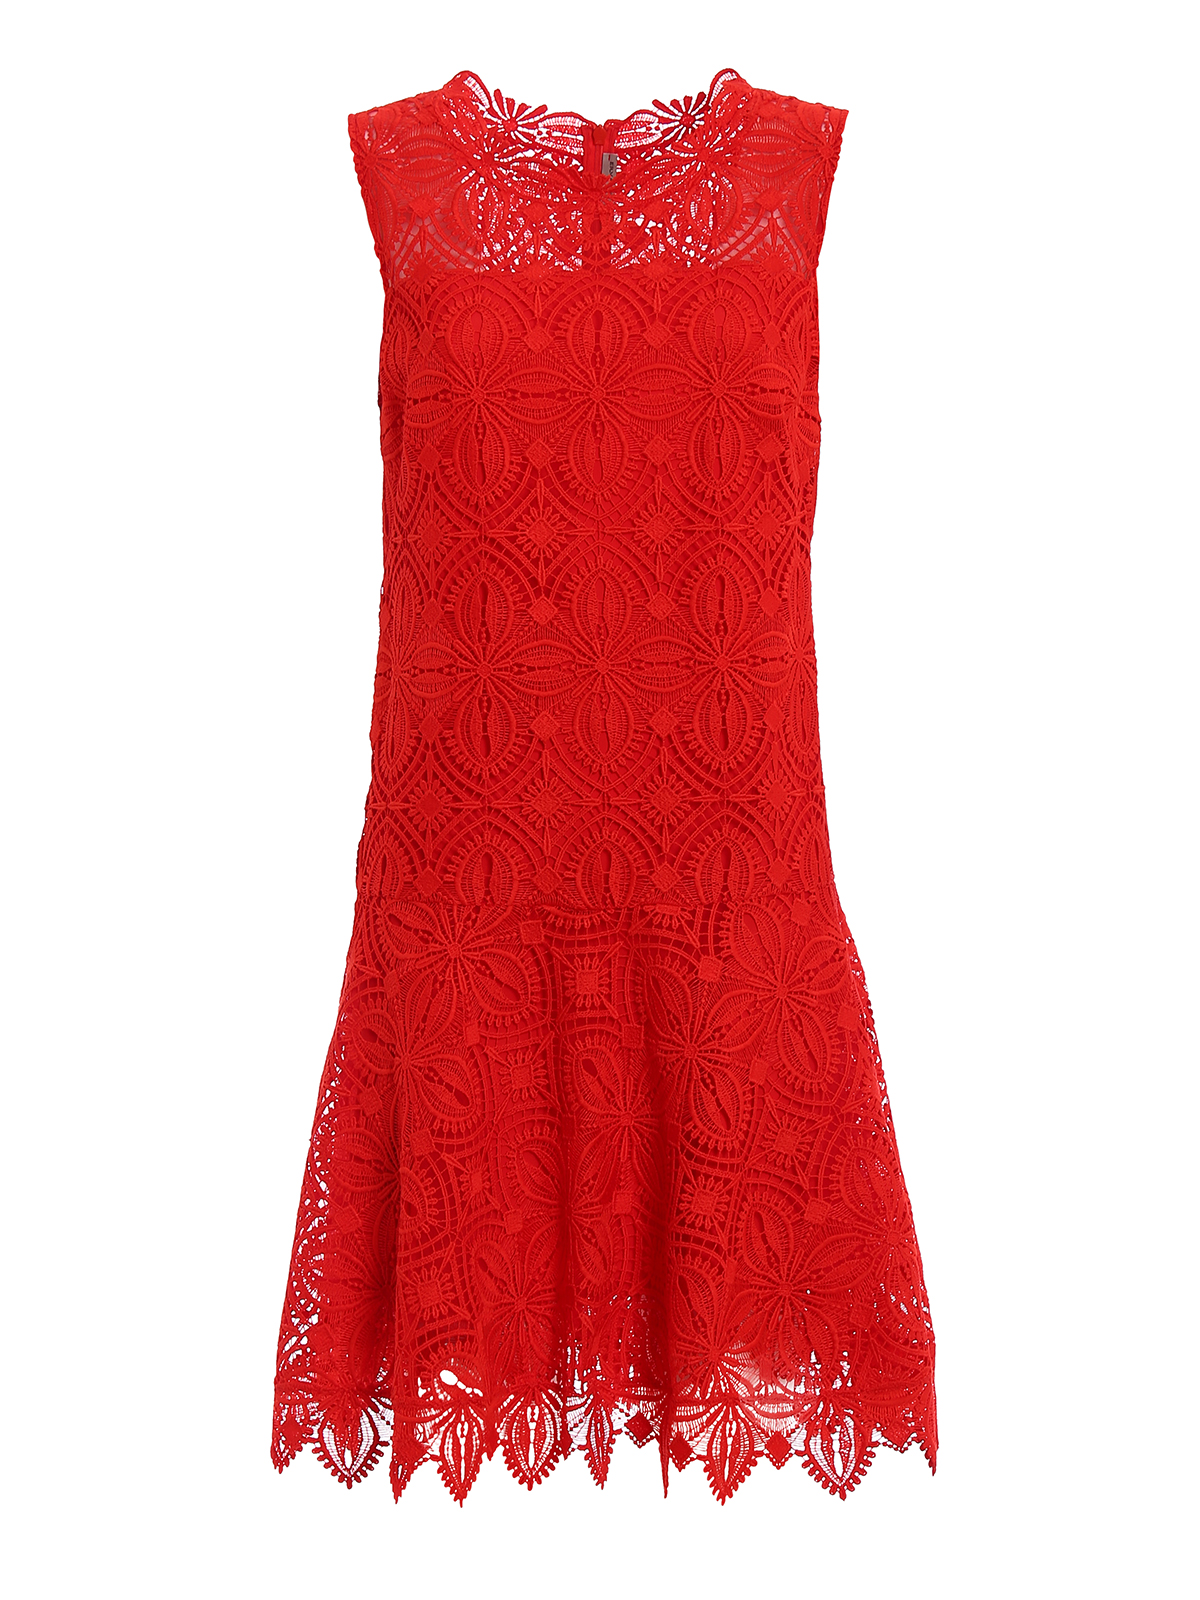 Femme Vêtements Robes Robes courtes et mini Robe courte Synthétique Ermanno Scervino en coloris Rouge 